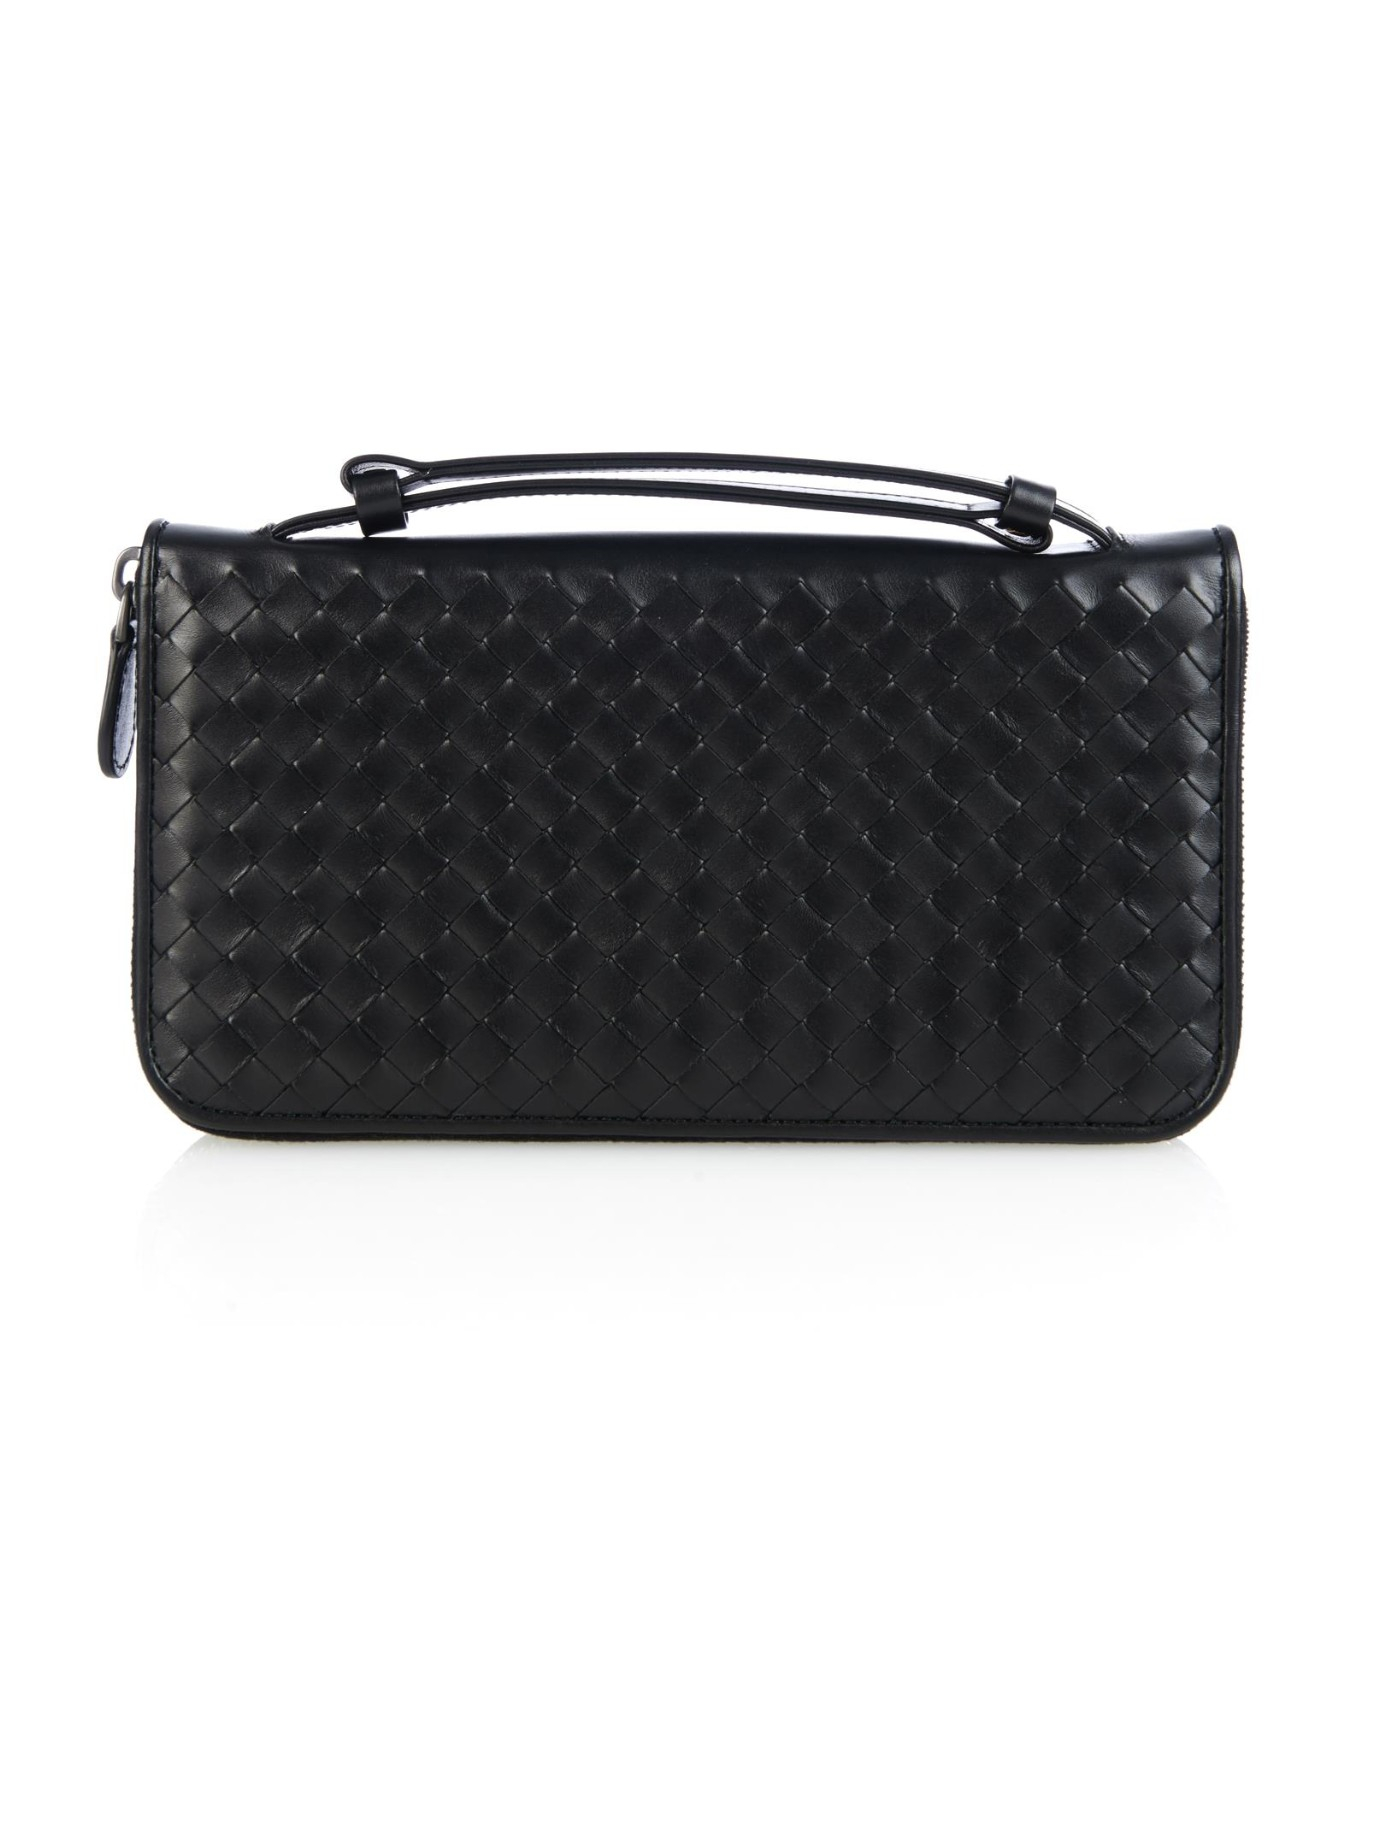 Bottega veneta Intrecciato Leather Travel Wallet in Black for Men | Lyst